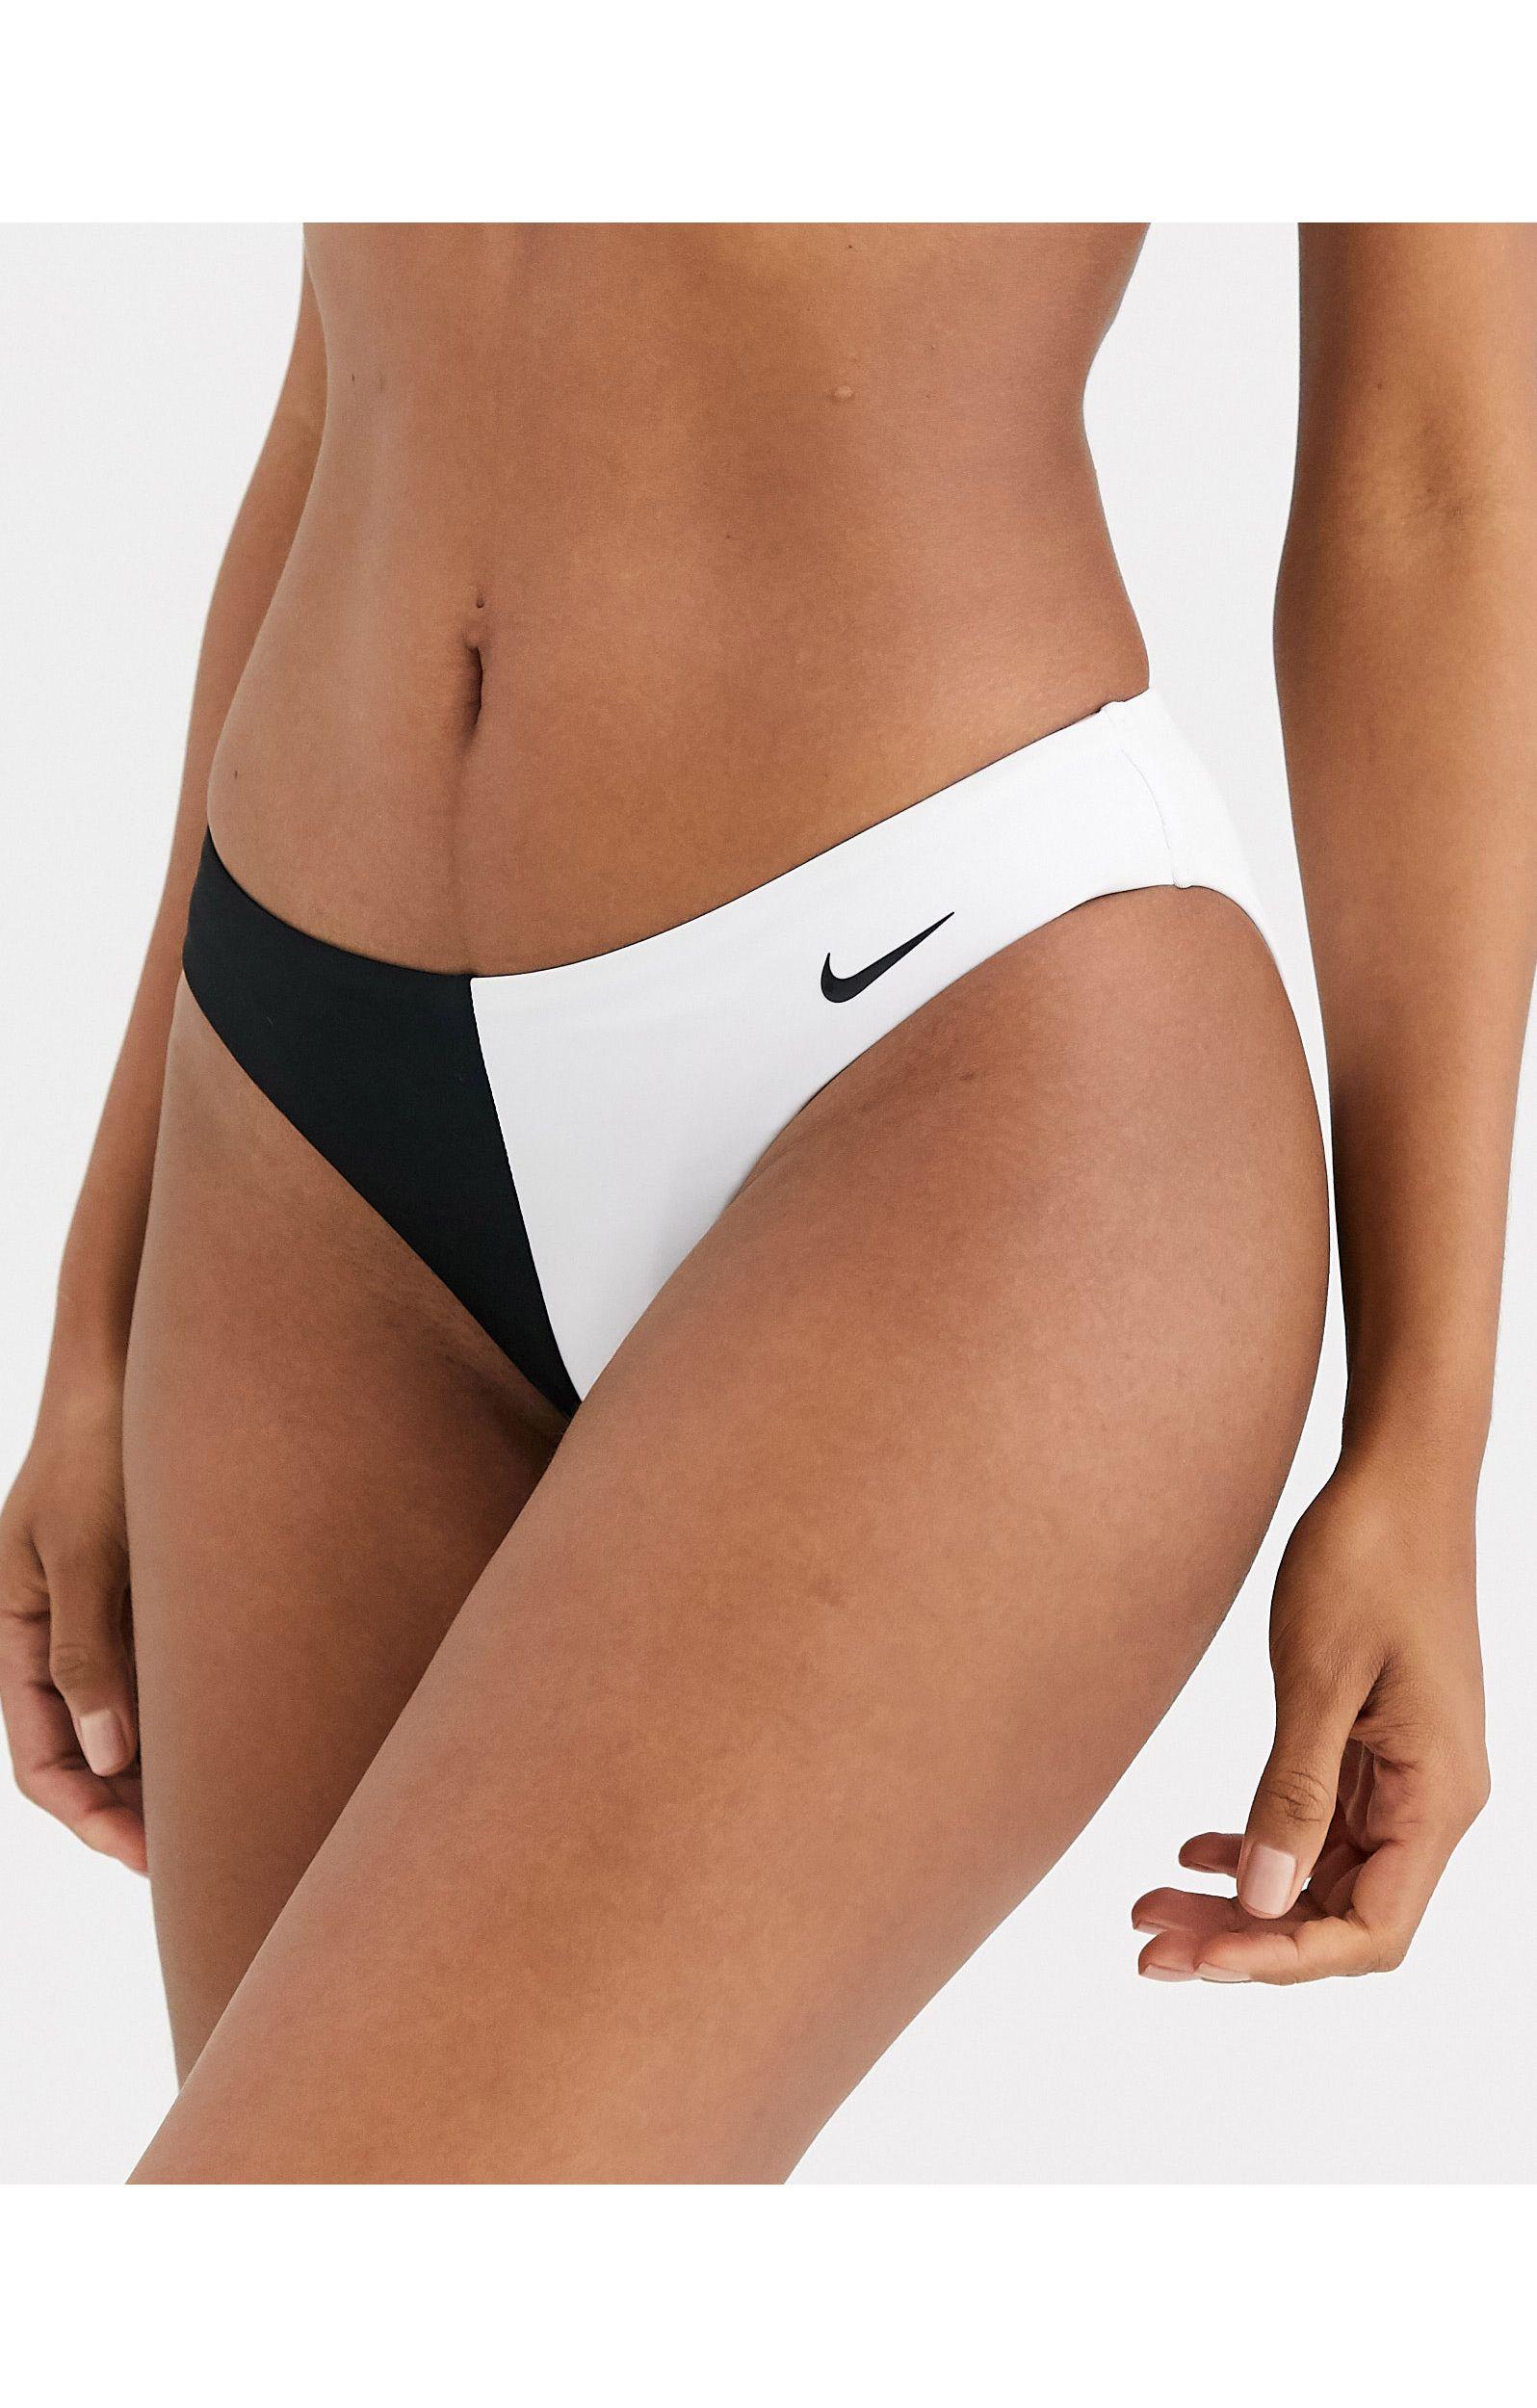 Nike Nike Sport Bikini Bottom in Black | Lyst UK